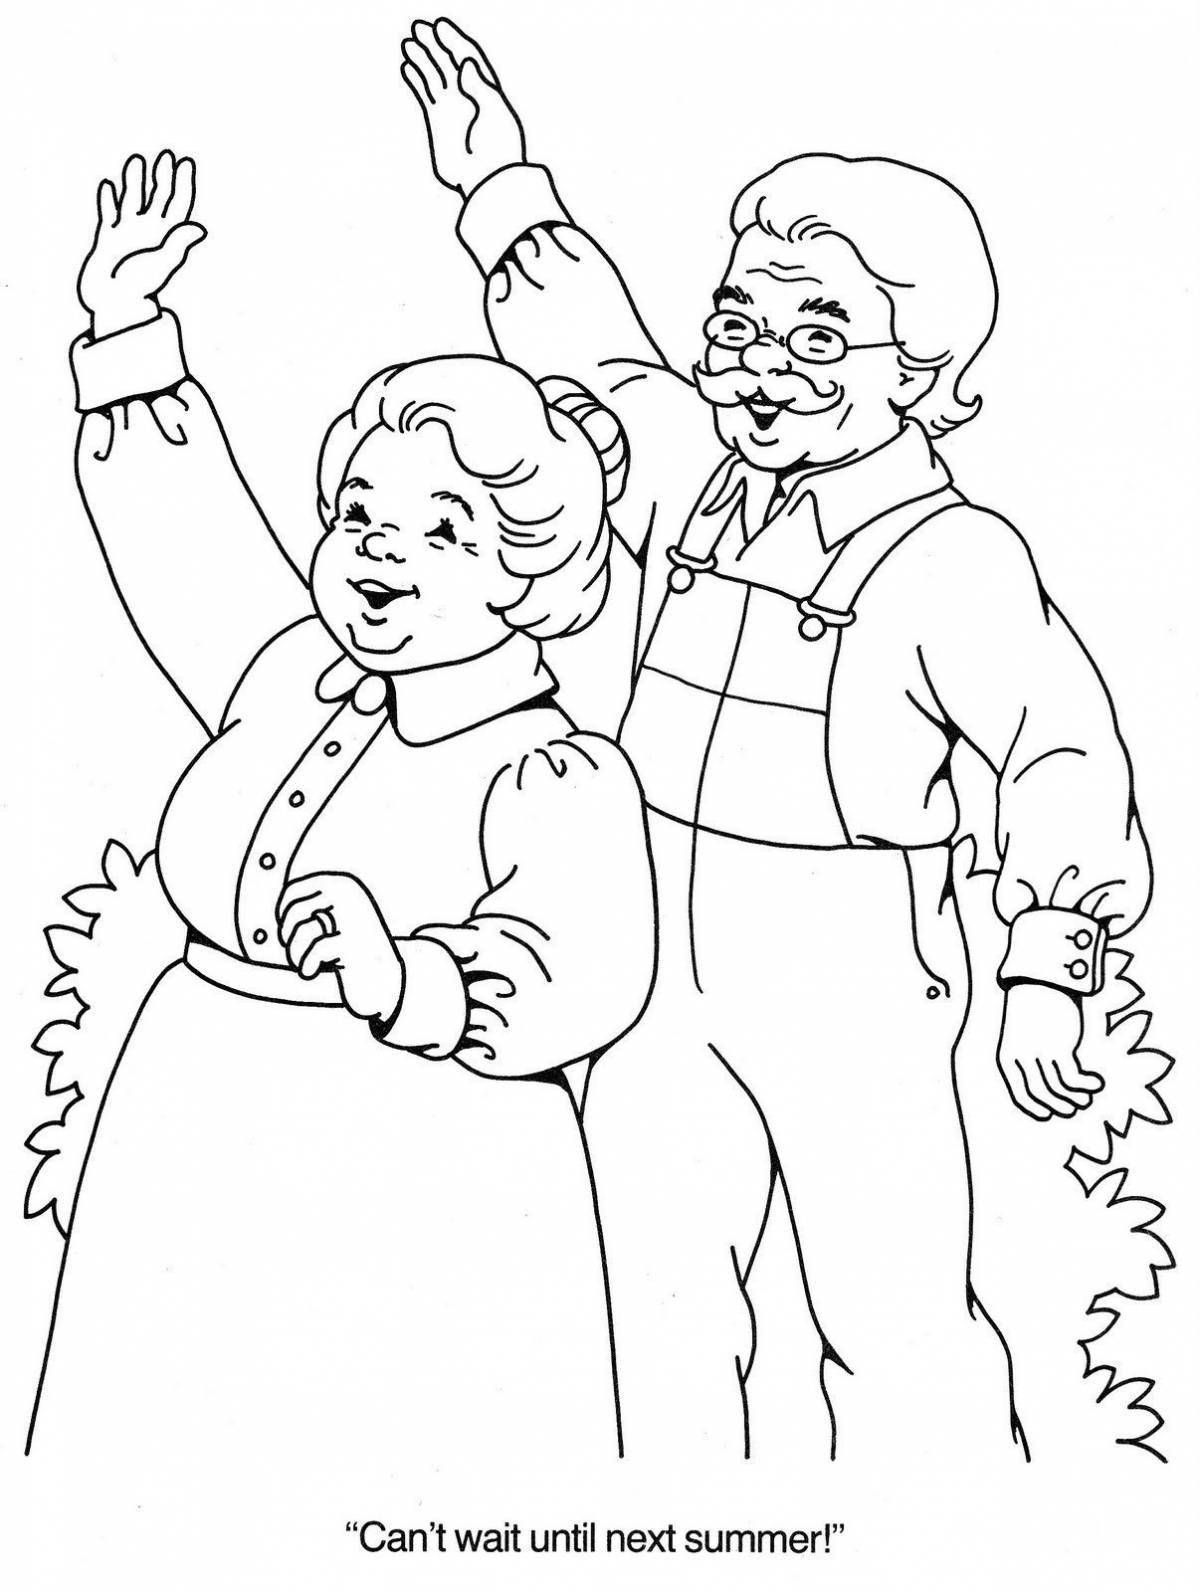 Coloring book smiling grandparents